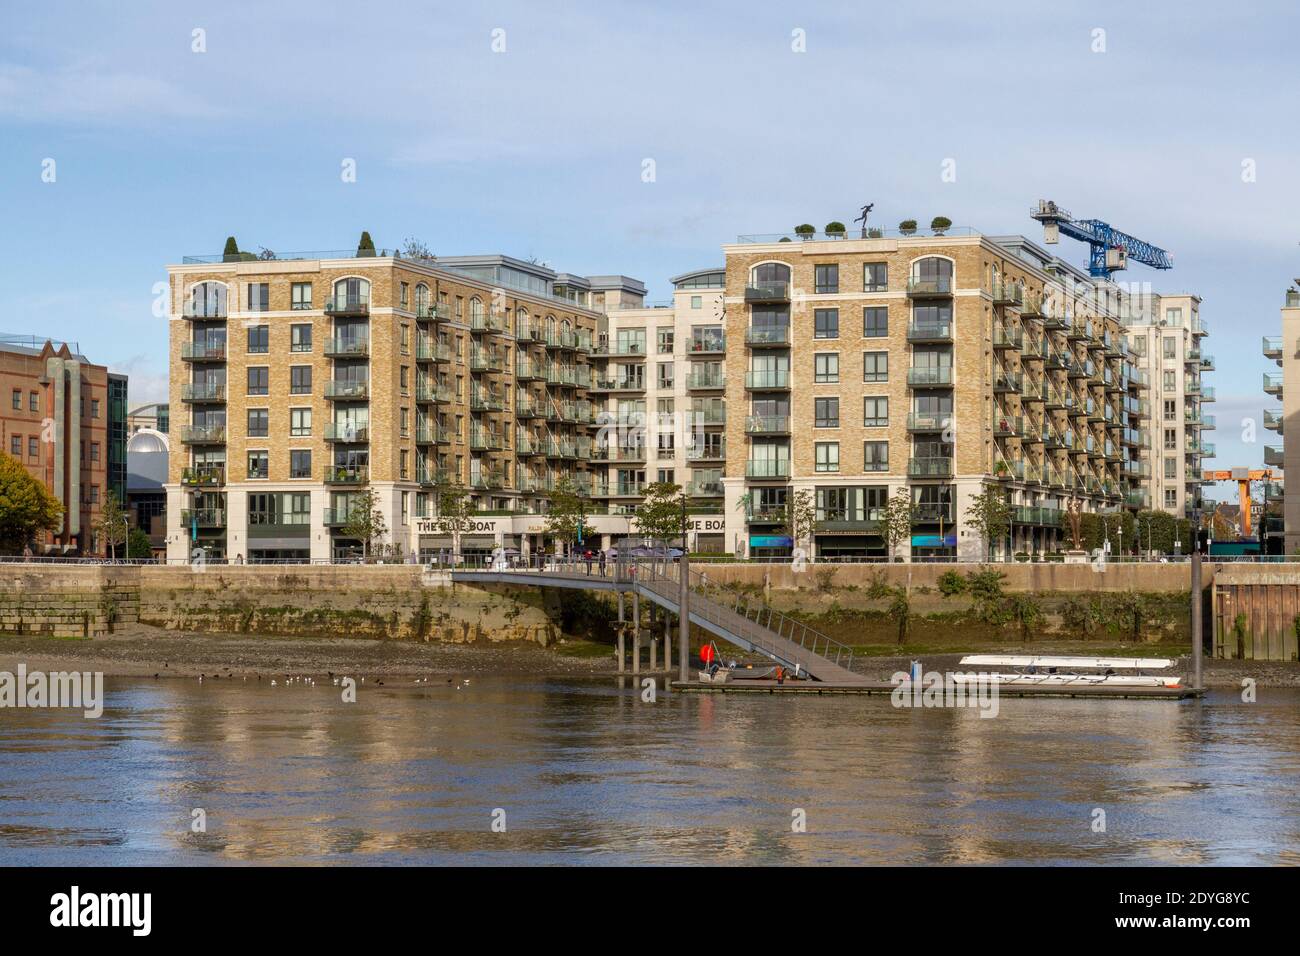 Vea el río Támesis hacia Distillery Wharf, modernos desarrollos residenciales en Fulham Reach, West London, Reino Unido. Foto de stock